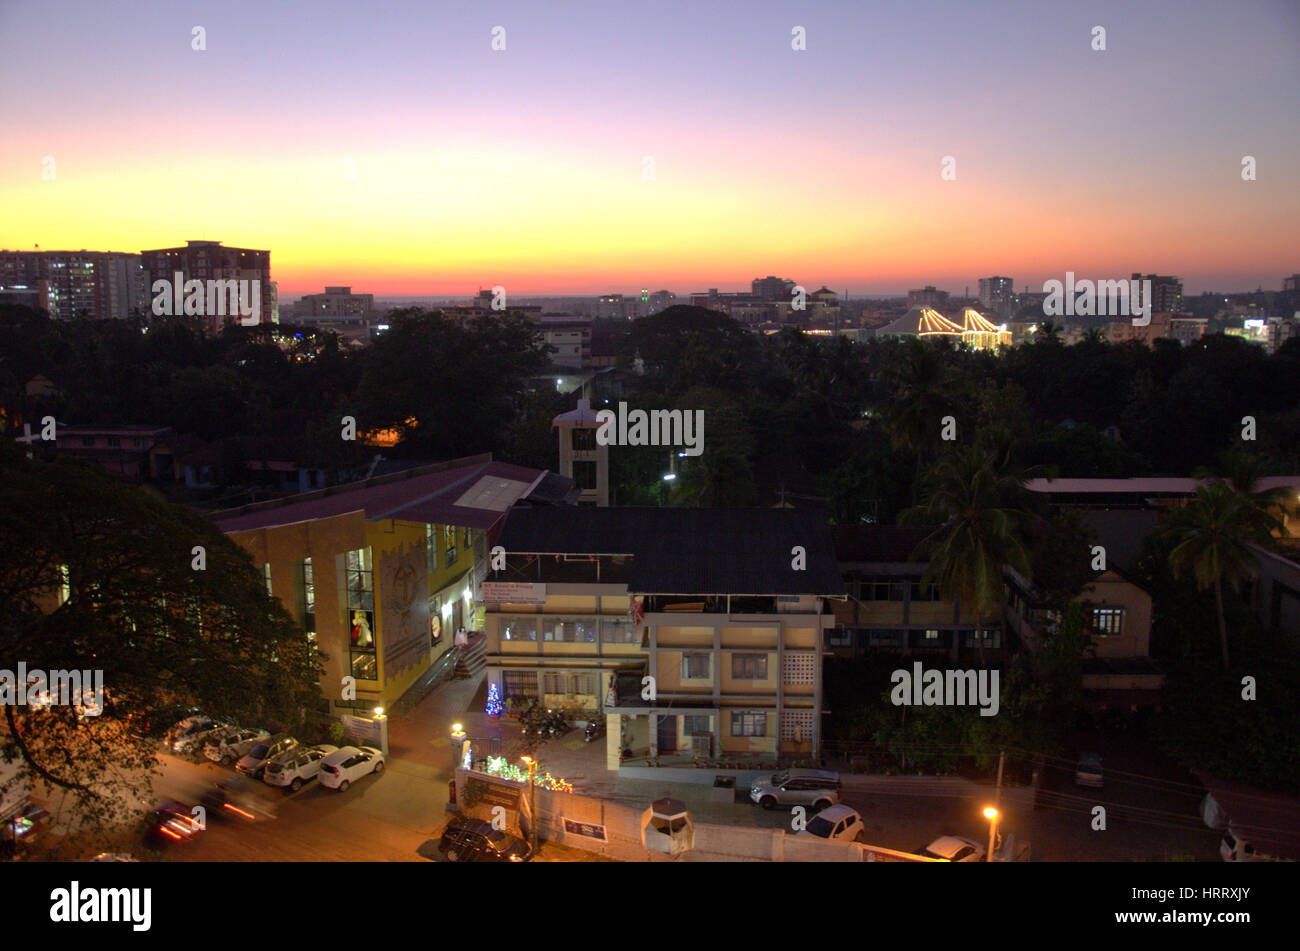 Mangalore skyline at sunset Stock Photo